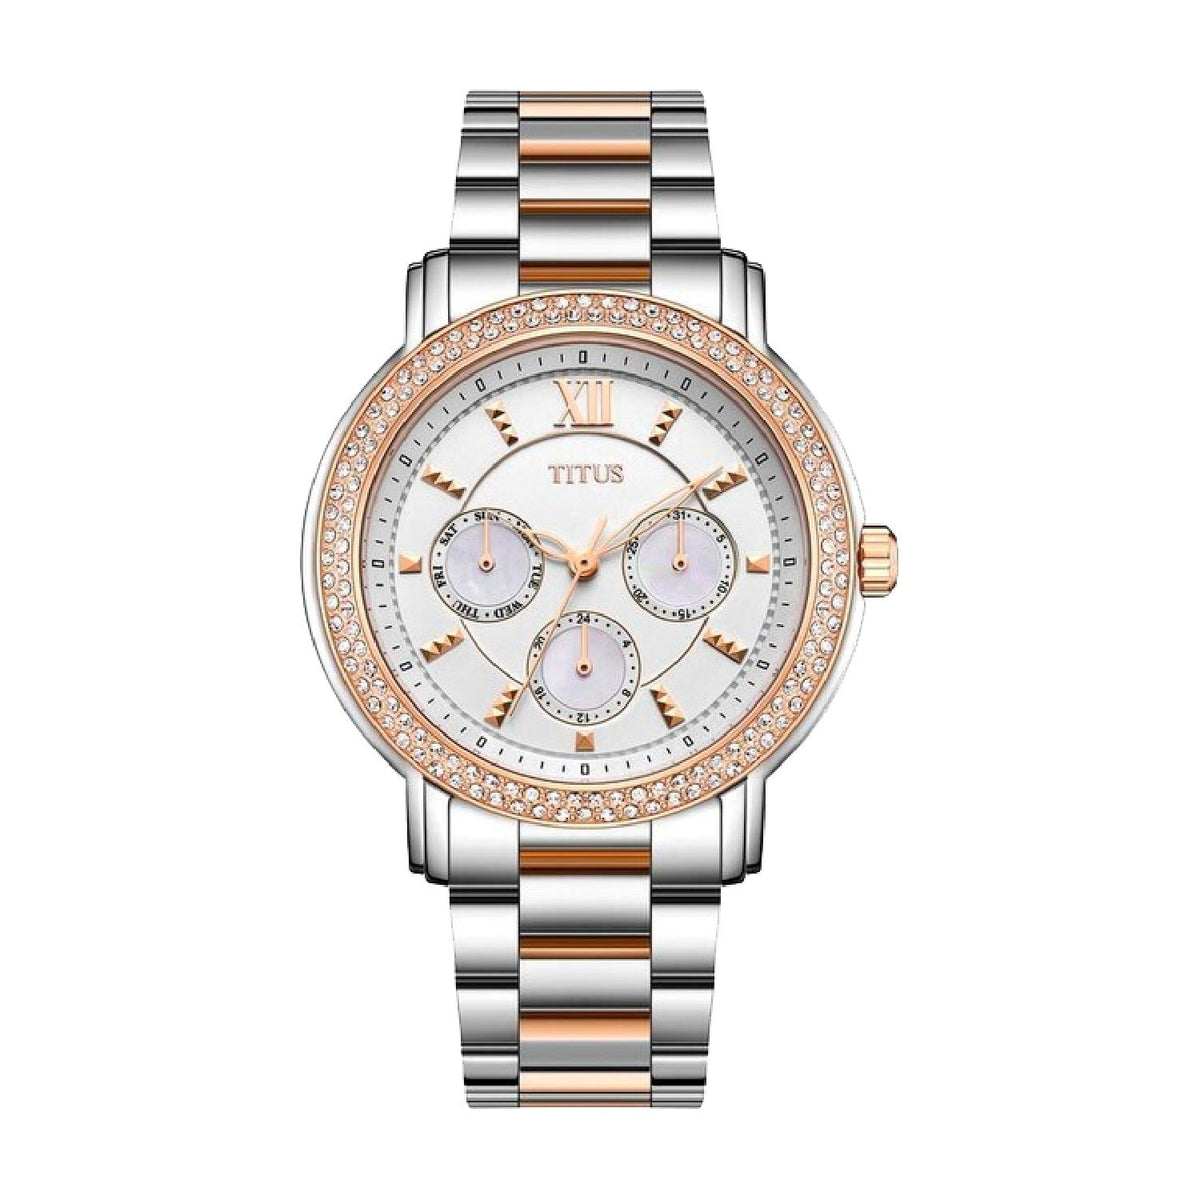 นาฬิกาผู้หญิง Fashionista มัลติฟังก์ชัน ระบบควอตซ์ สายสแตนเลสสตีล ขนาดตัวเรือน 37 มม. (W06-03251-001)